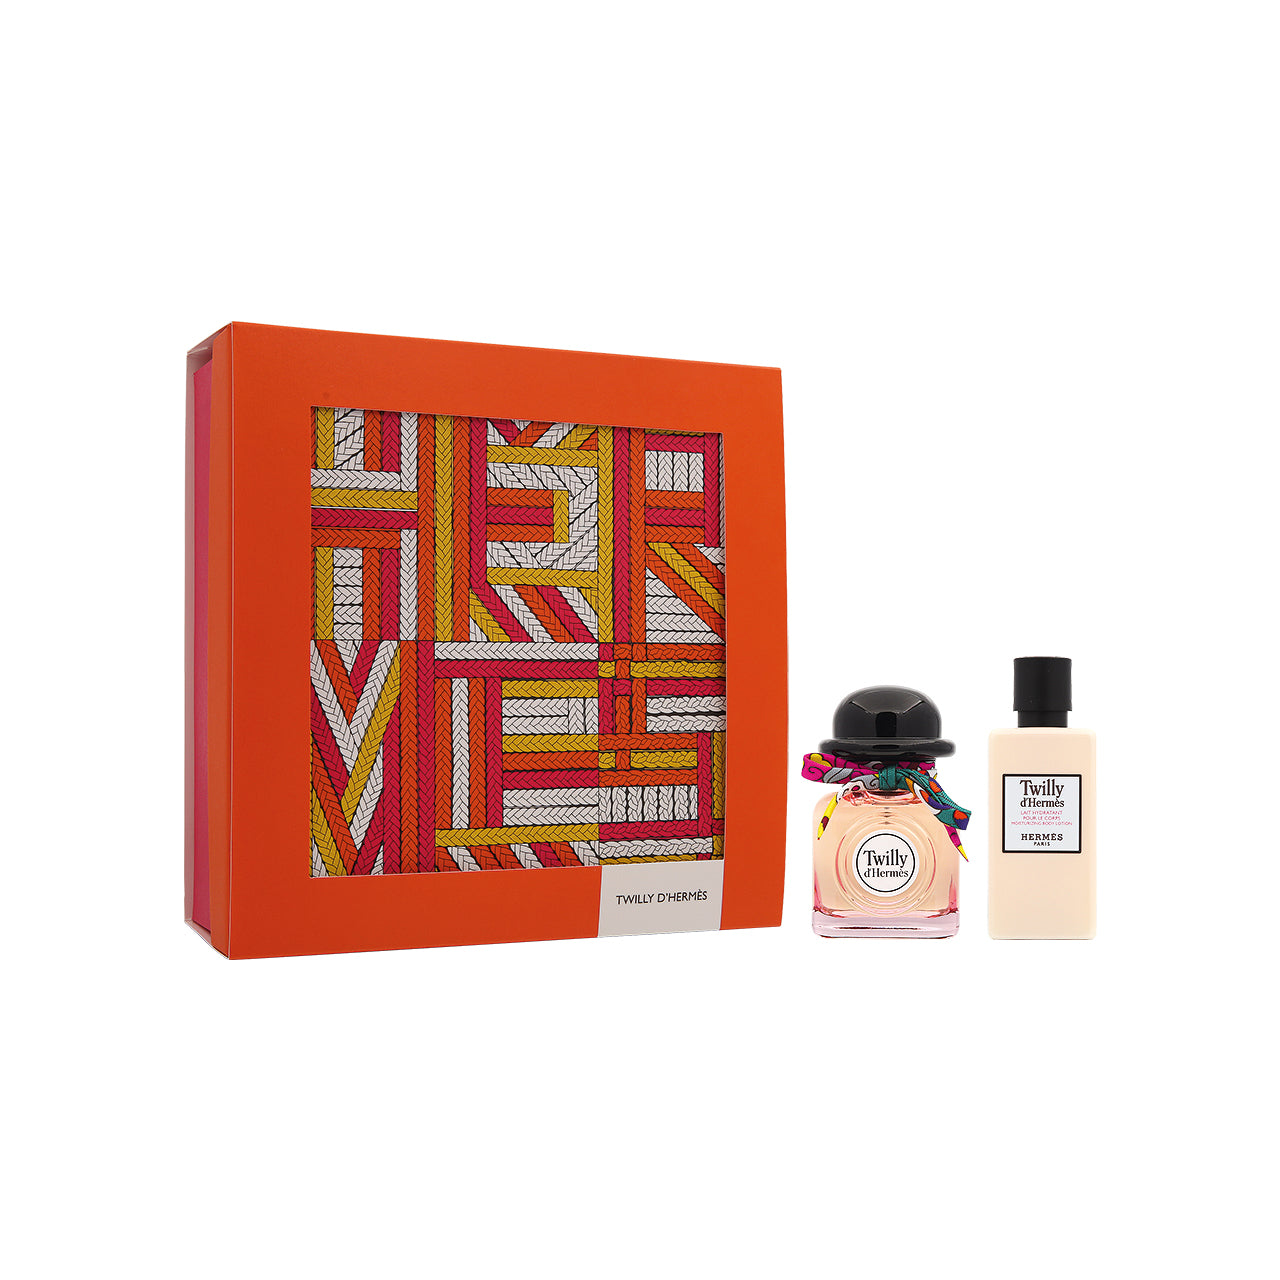 Hermès Twilly d'Hermès Eau de Parfum Gift Set (2pcs)